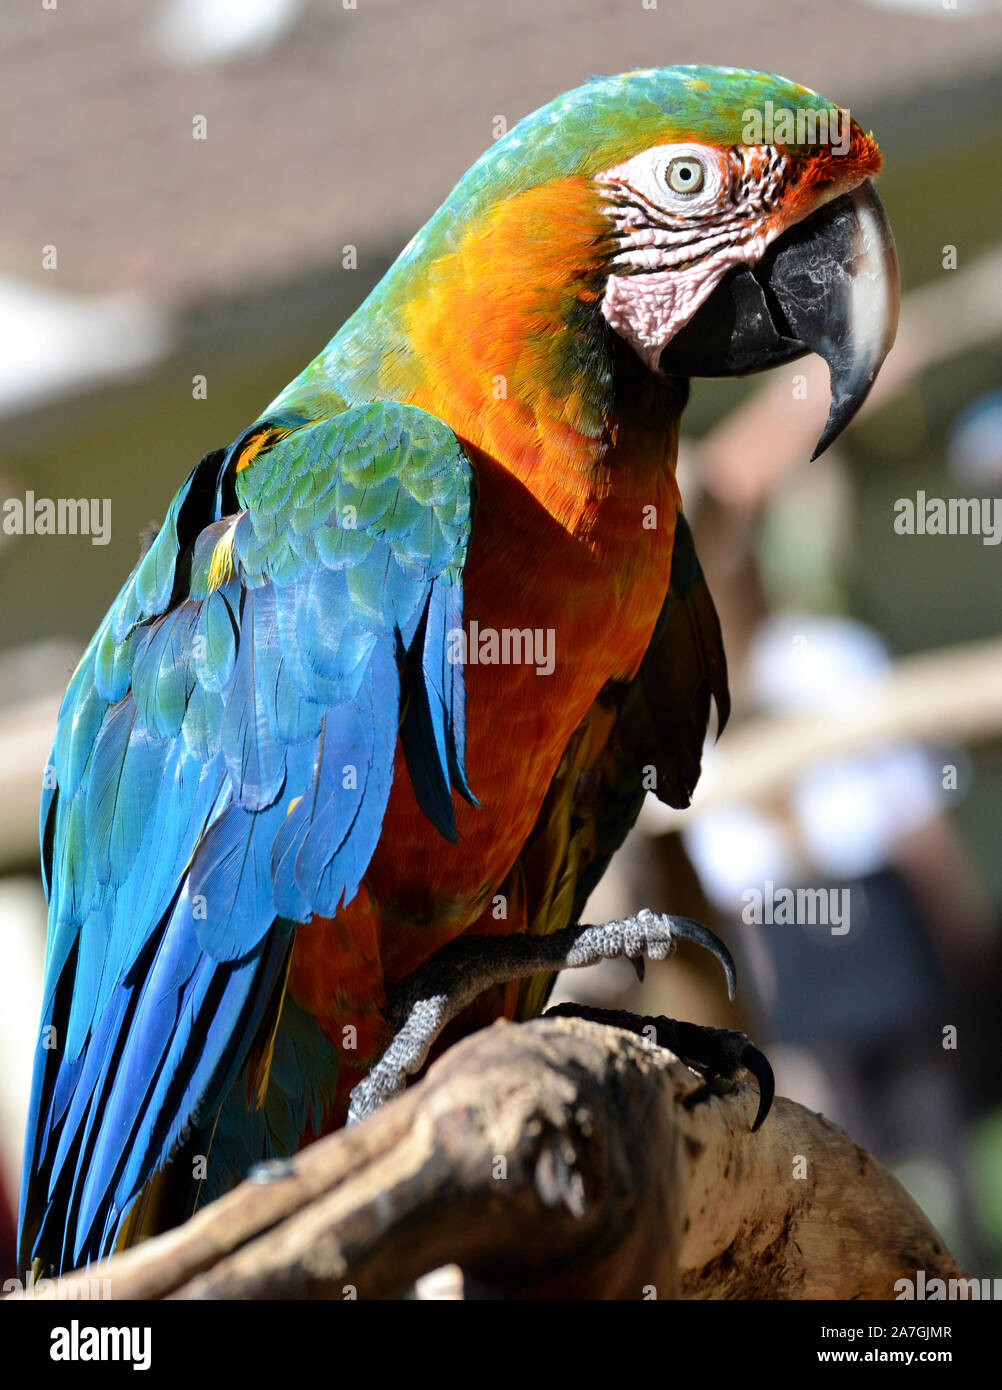 Hybrid Macaw, parrot, at Tropical Birdland, Lindridge Lane, Desford, Leicestershire, UK Stock Photo